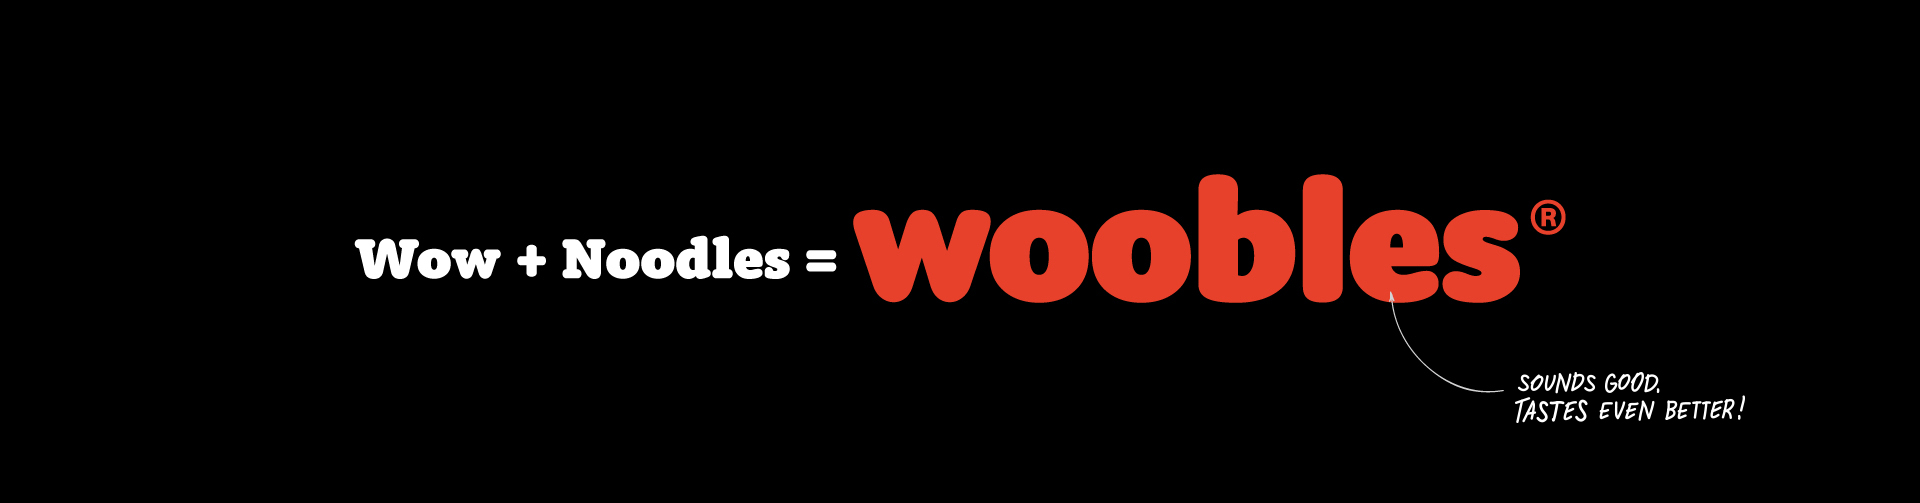 来自面条的灵感！Woobles餐厅品牌视觉设计